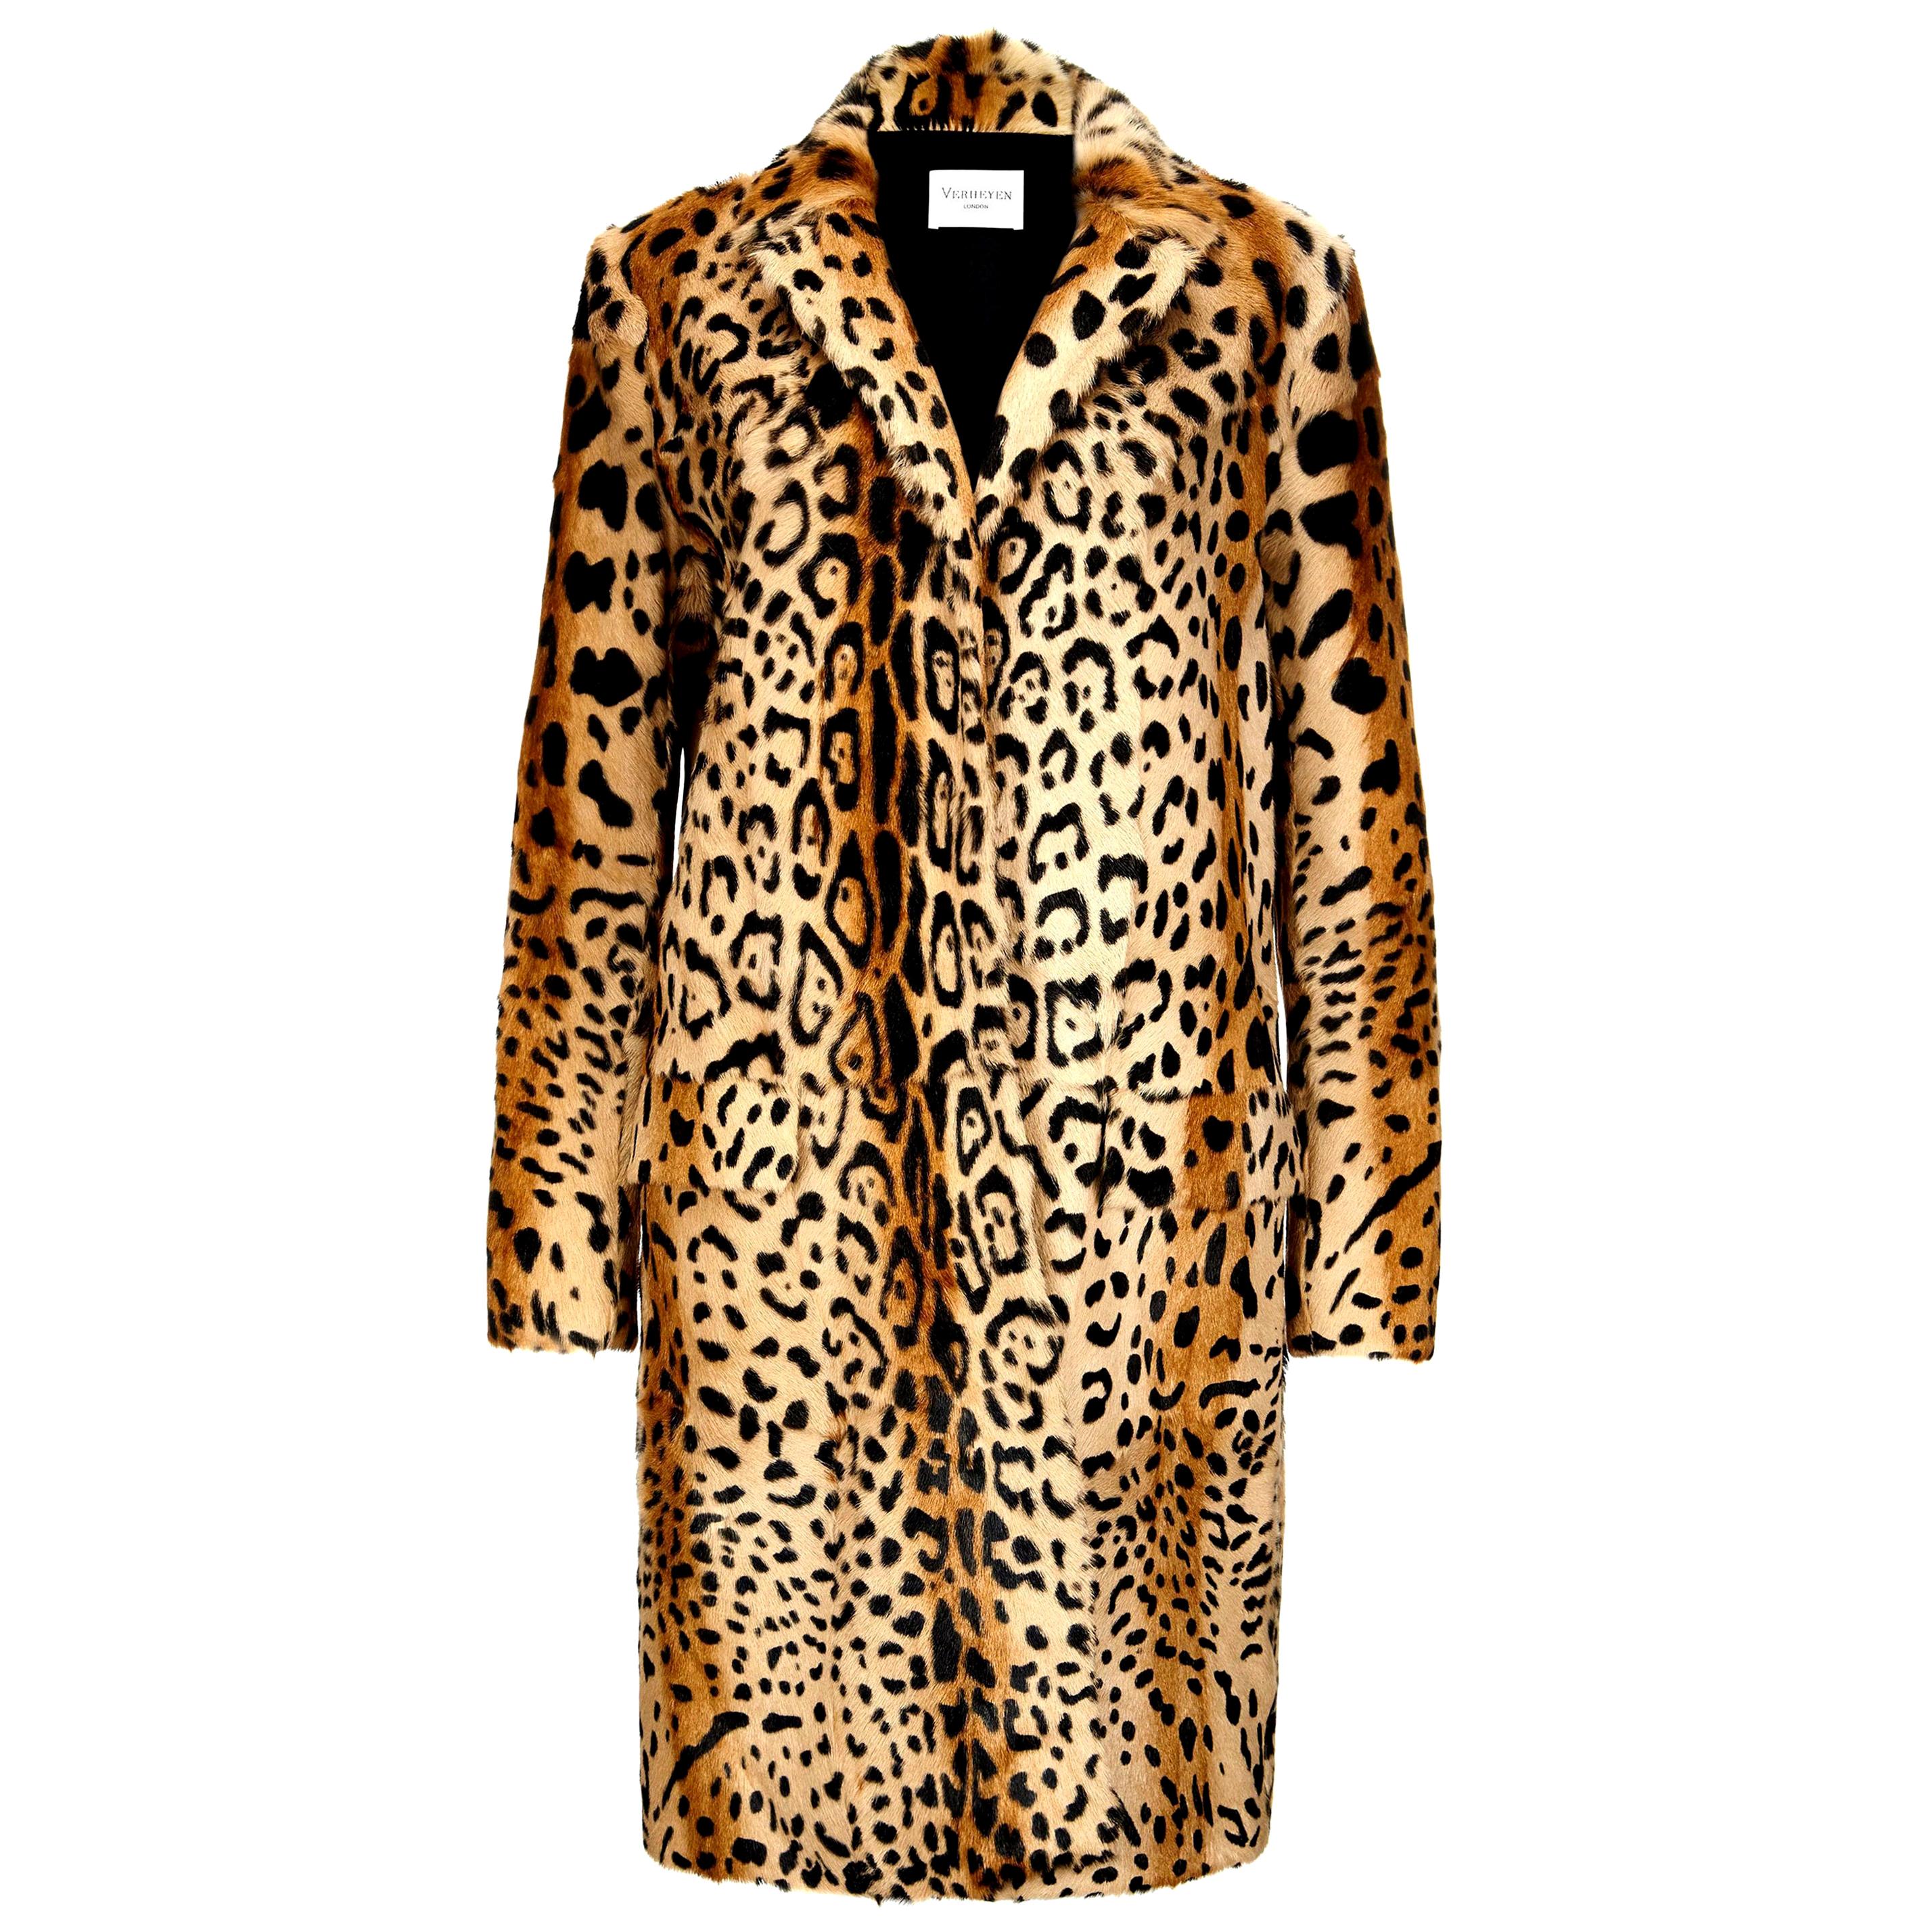 Verheyen London Leopard Print Coat in Natural Goat Hair Fur UK 10 